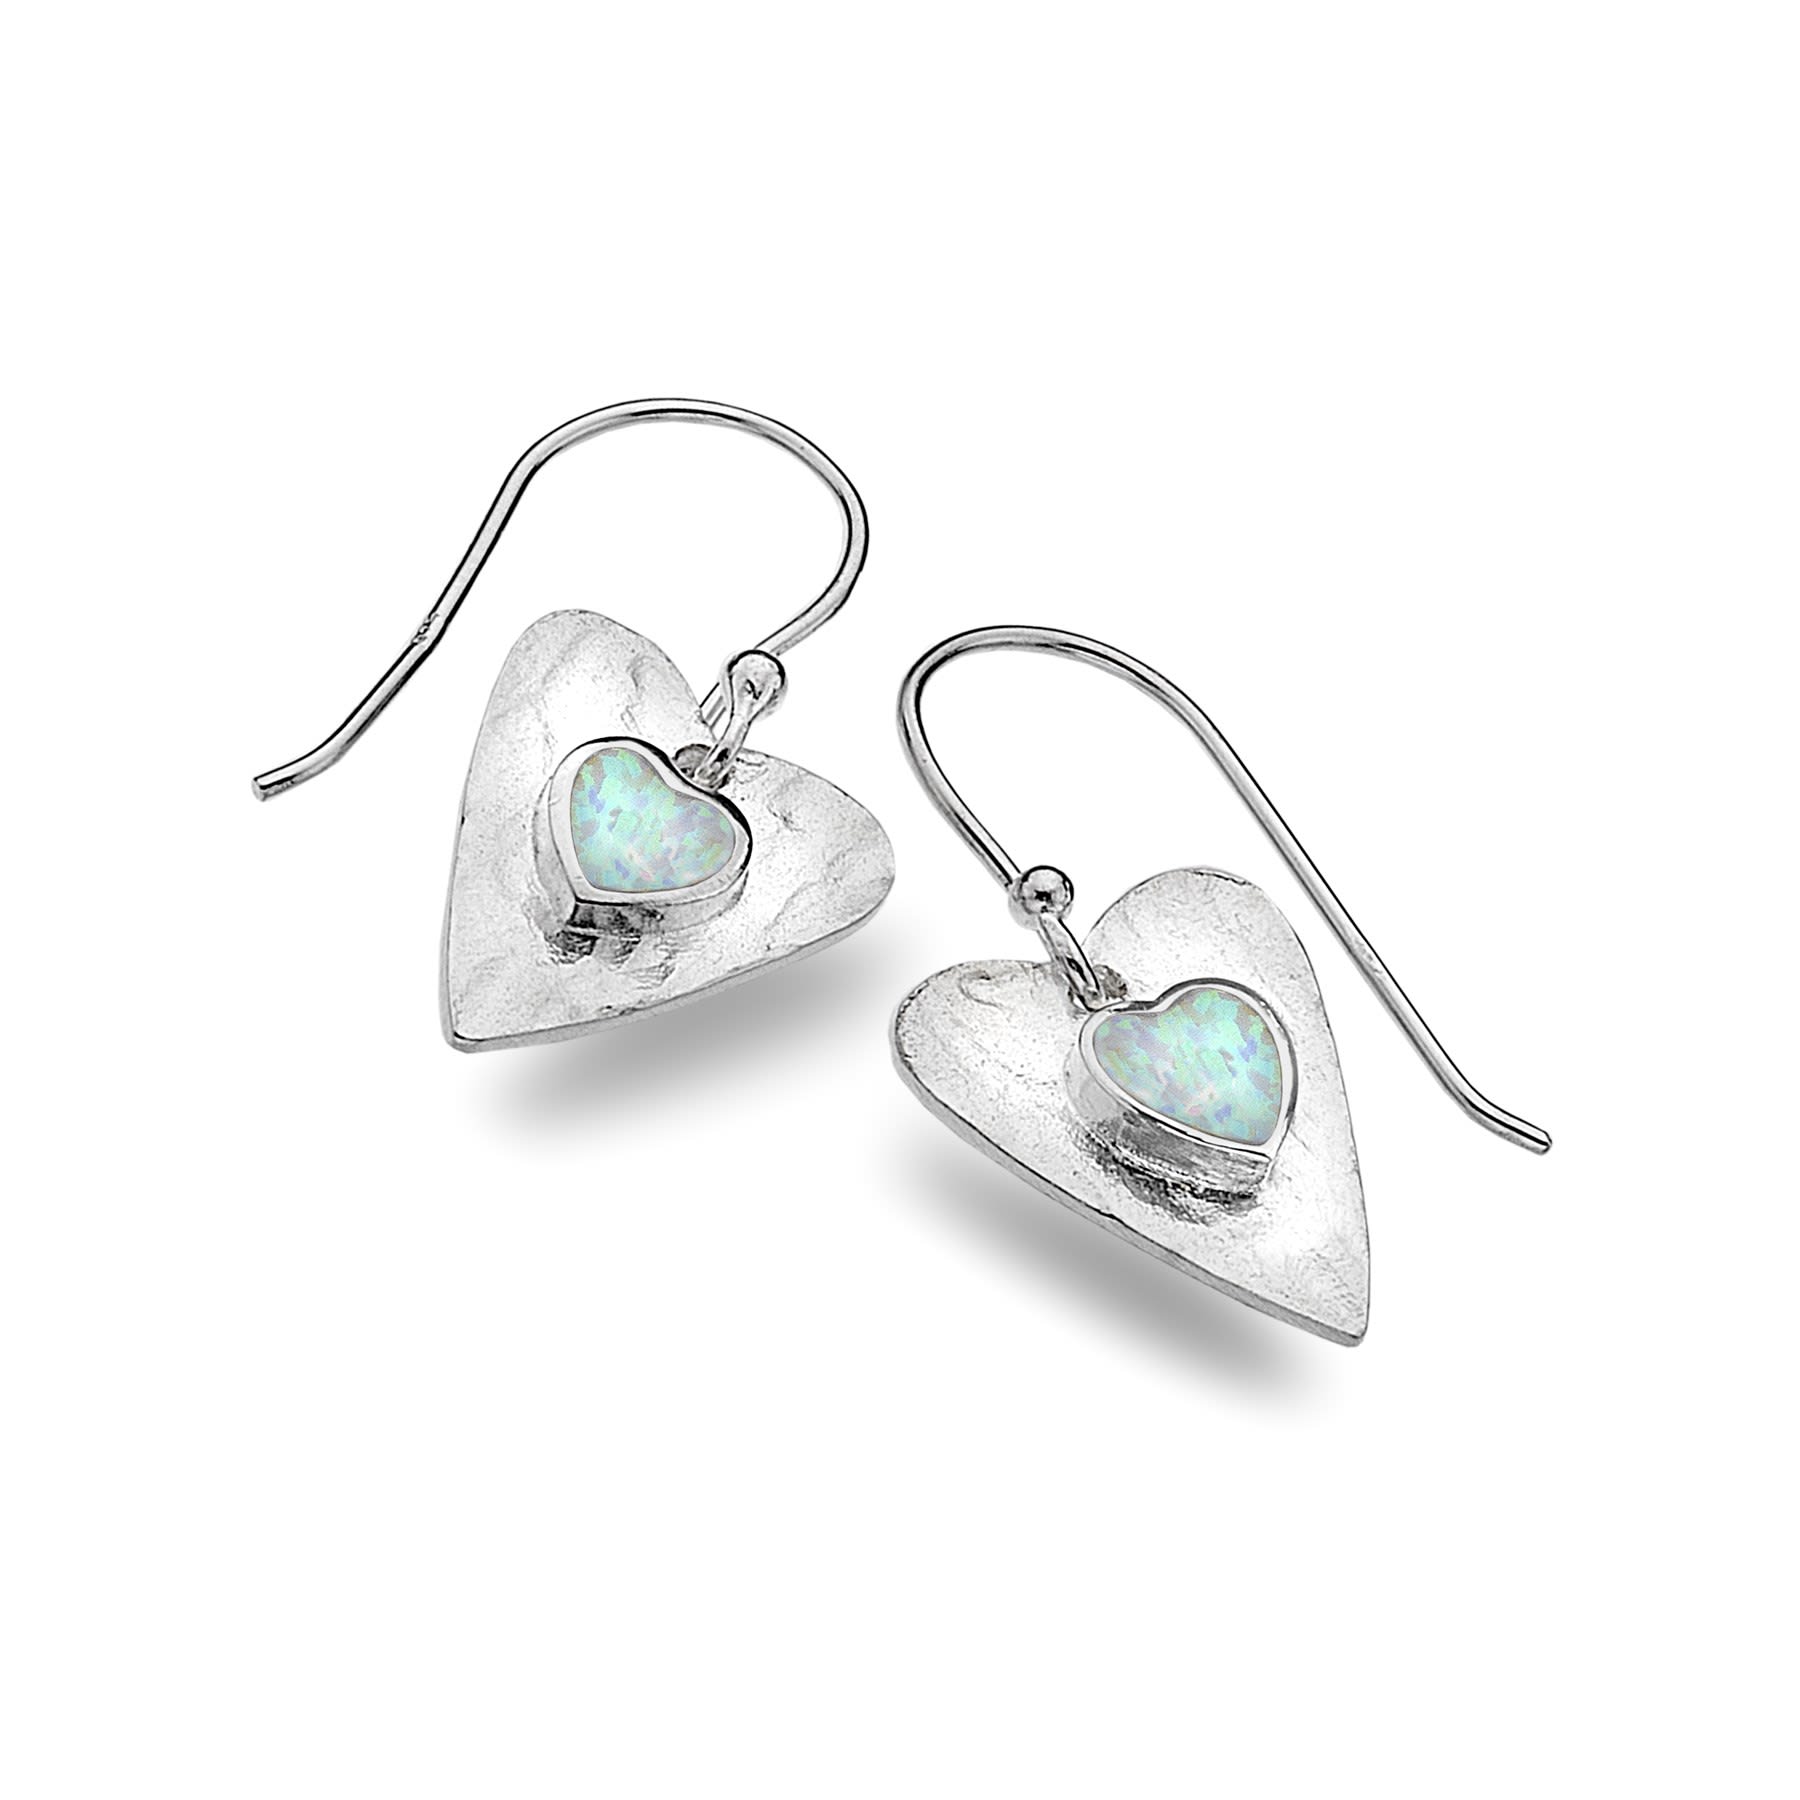 Opal Heart Earrings - The Nancy Smillie Shop - Art, Jewellery & Designer Gifts Glasgow